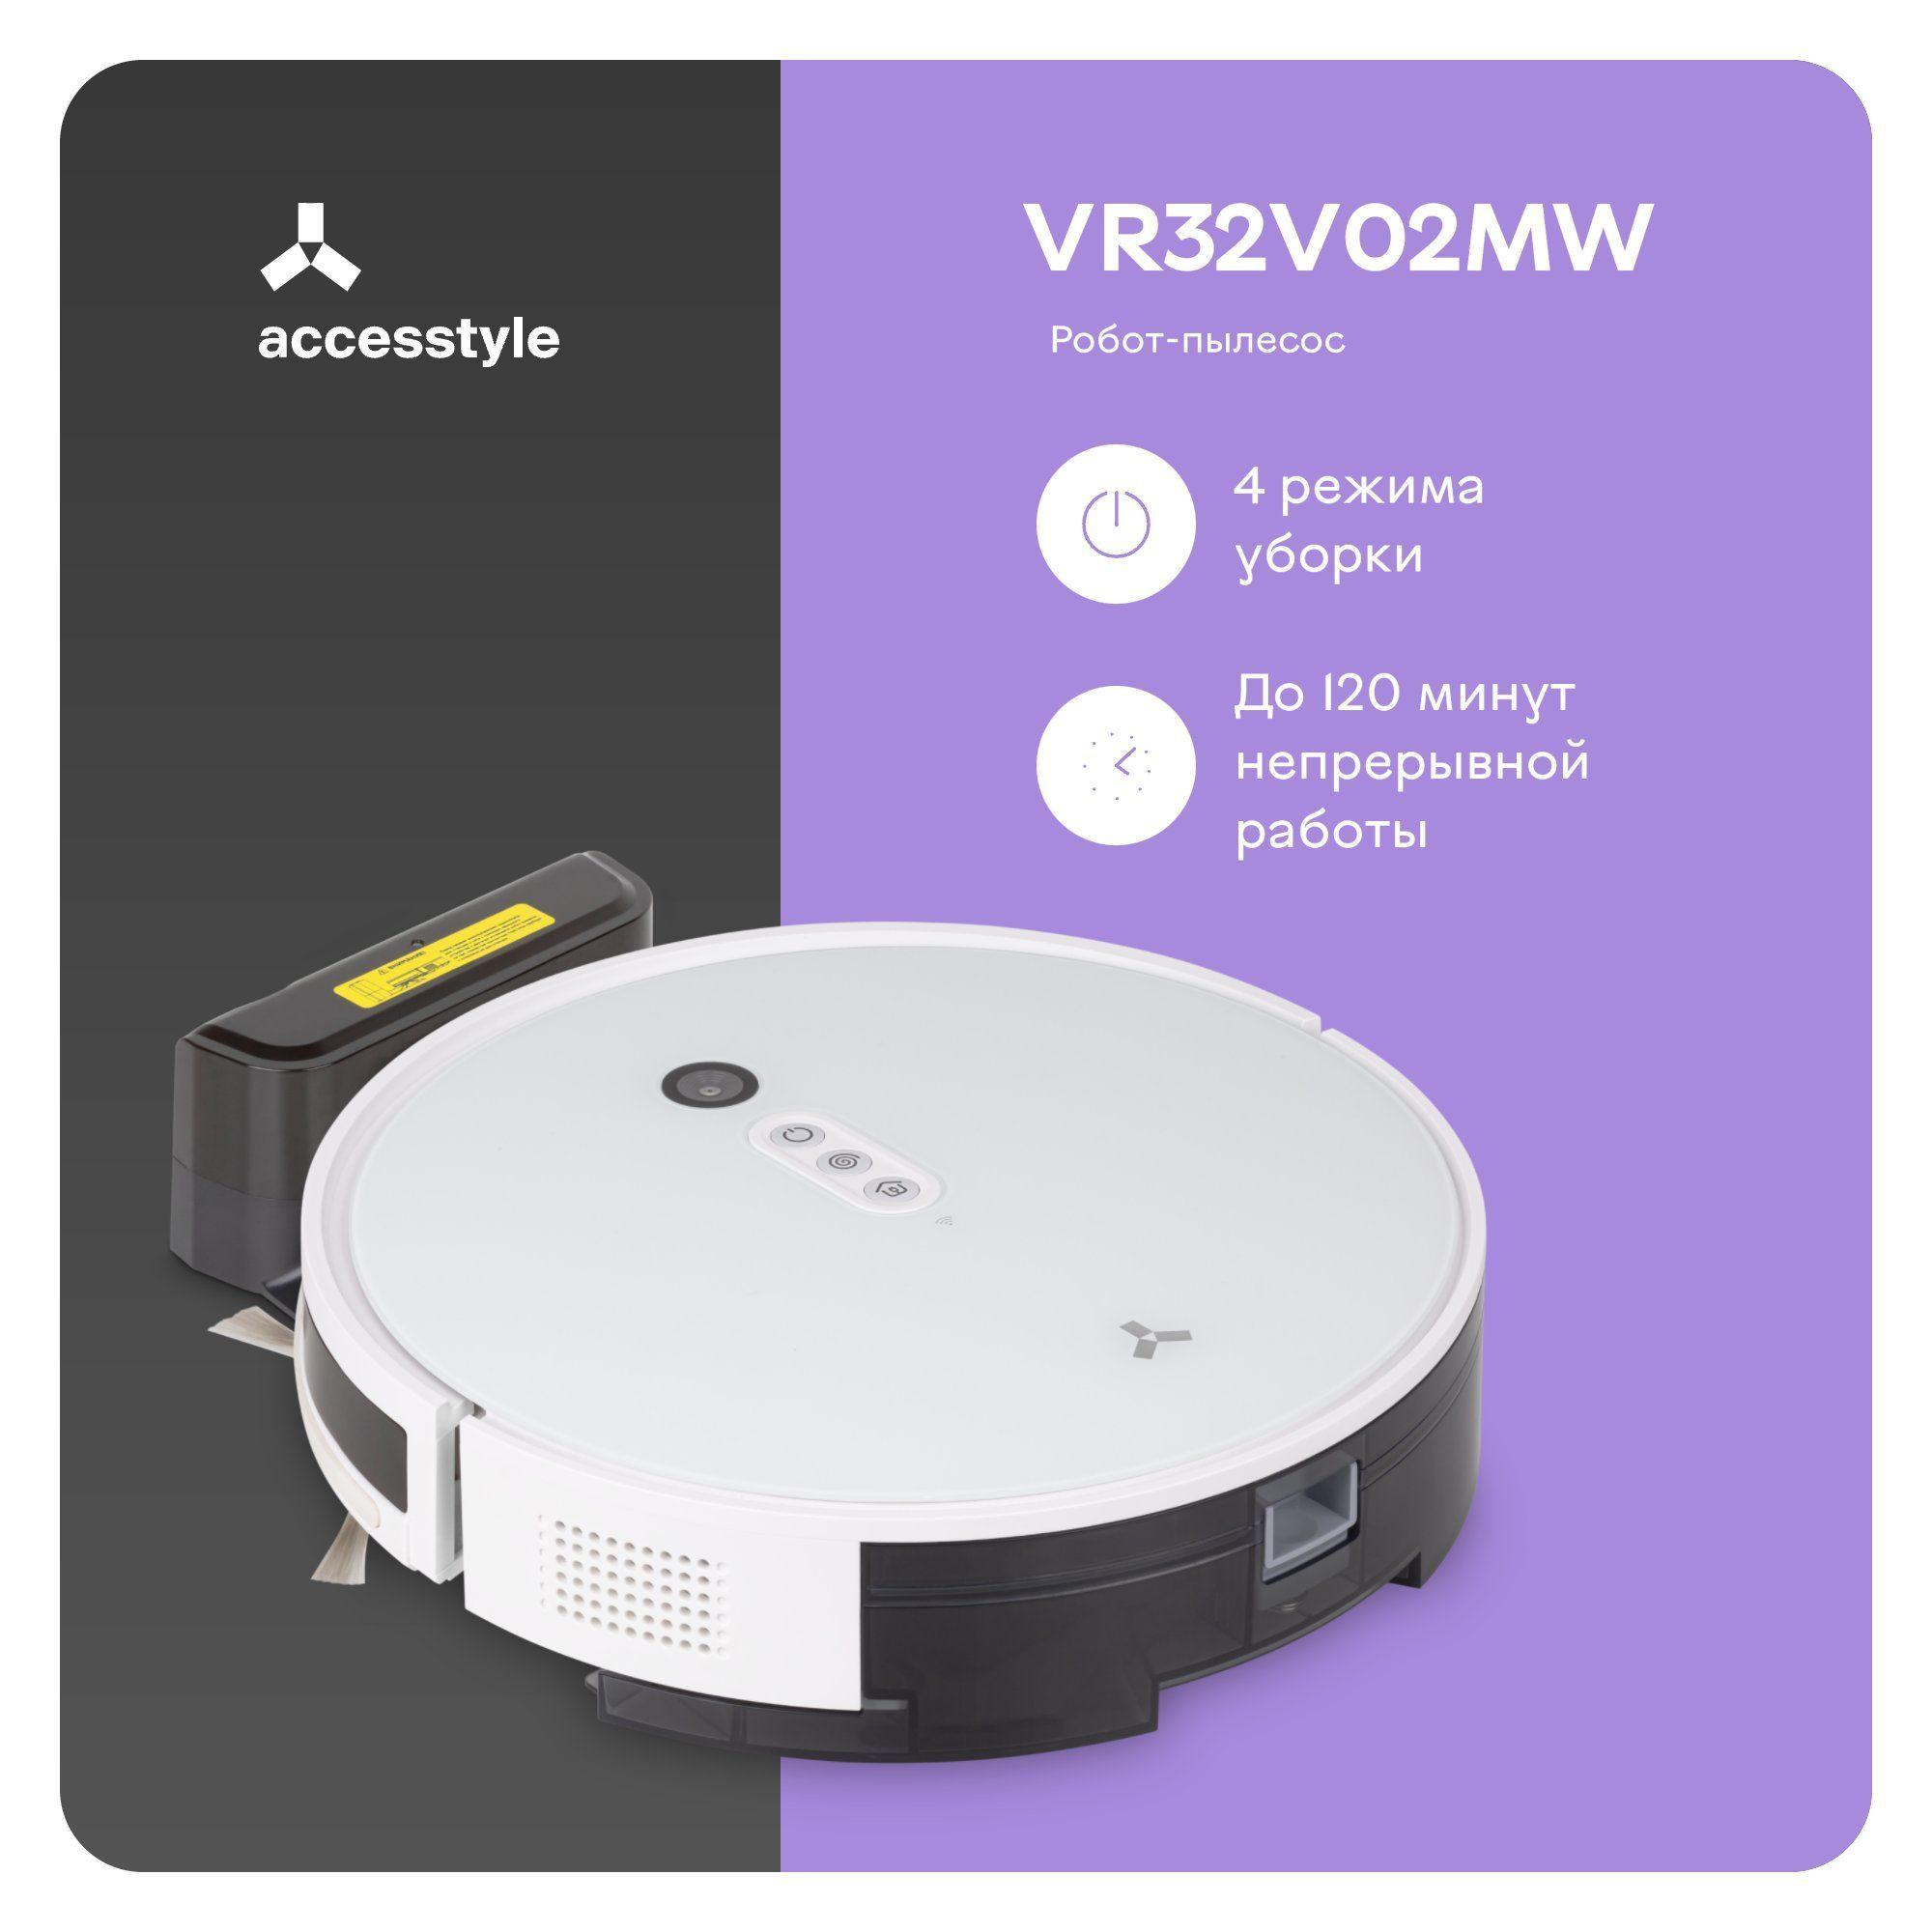 AccesStyle | AccesStyle Робот-пылесос для сухой и влажной уборки / навигация VSLAM / 4 режима уборки / турбощетка в комплекте, белый, черный